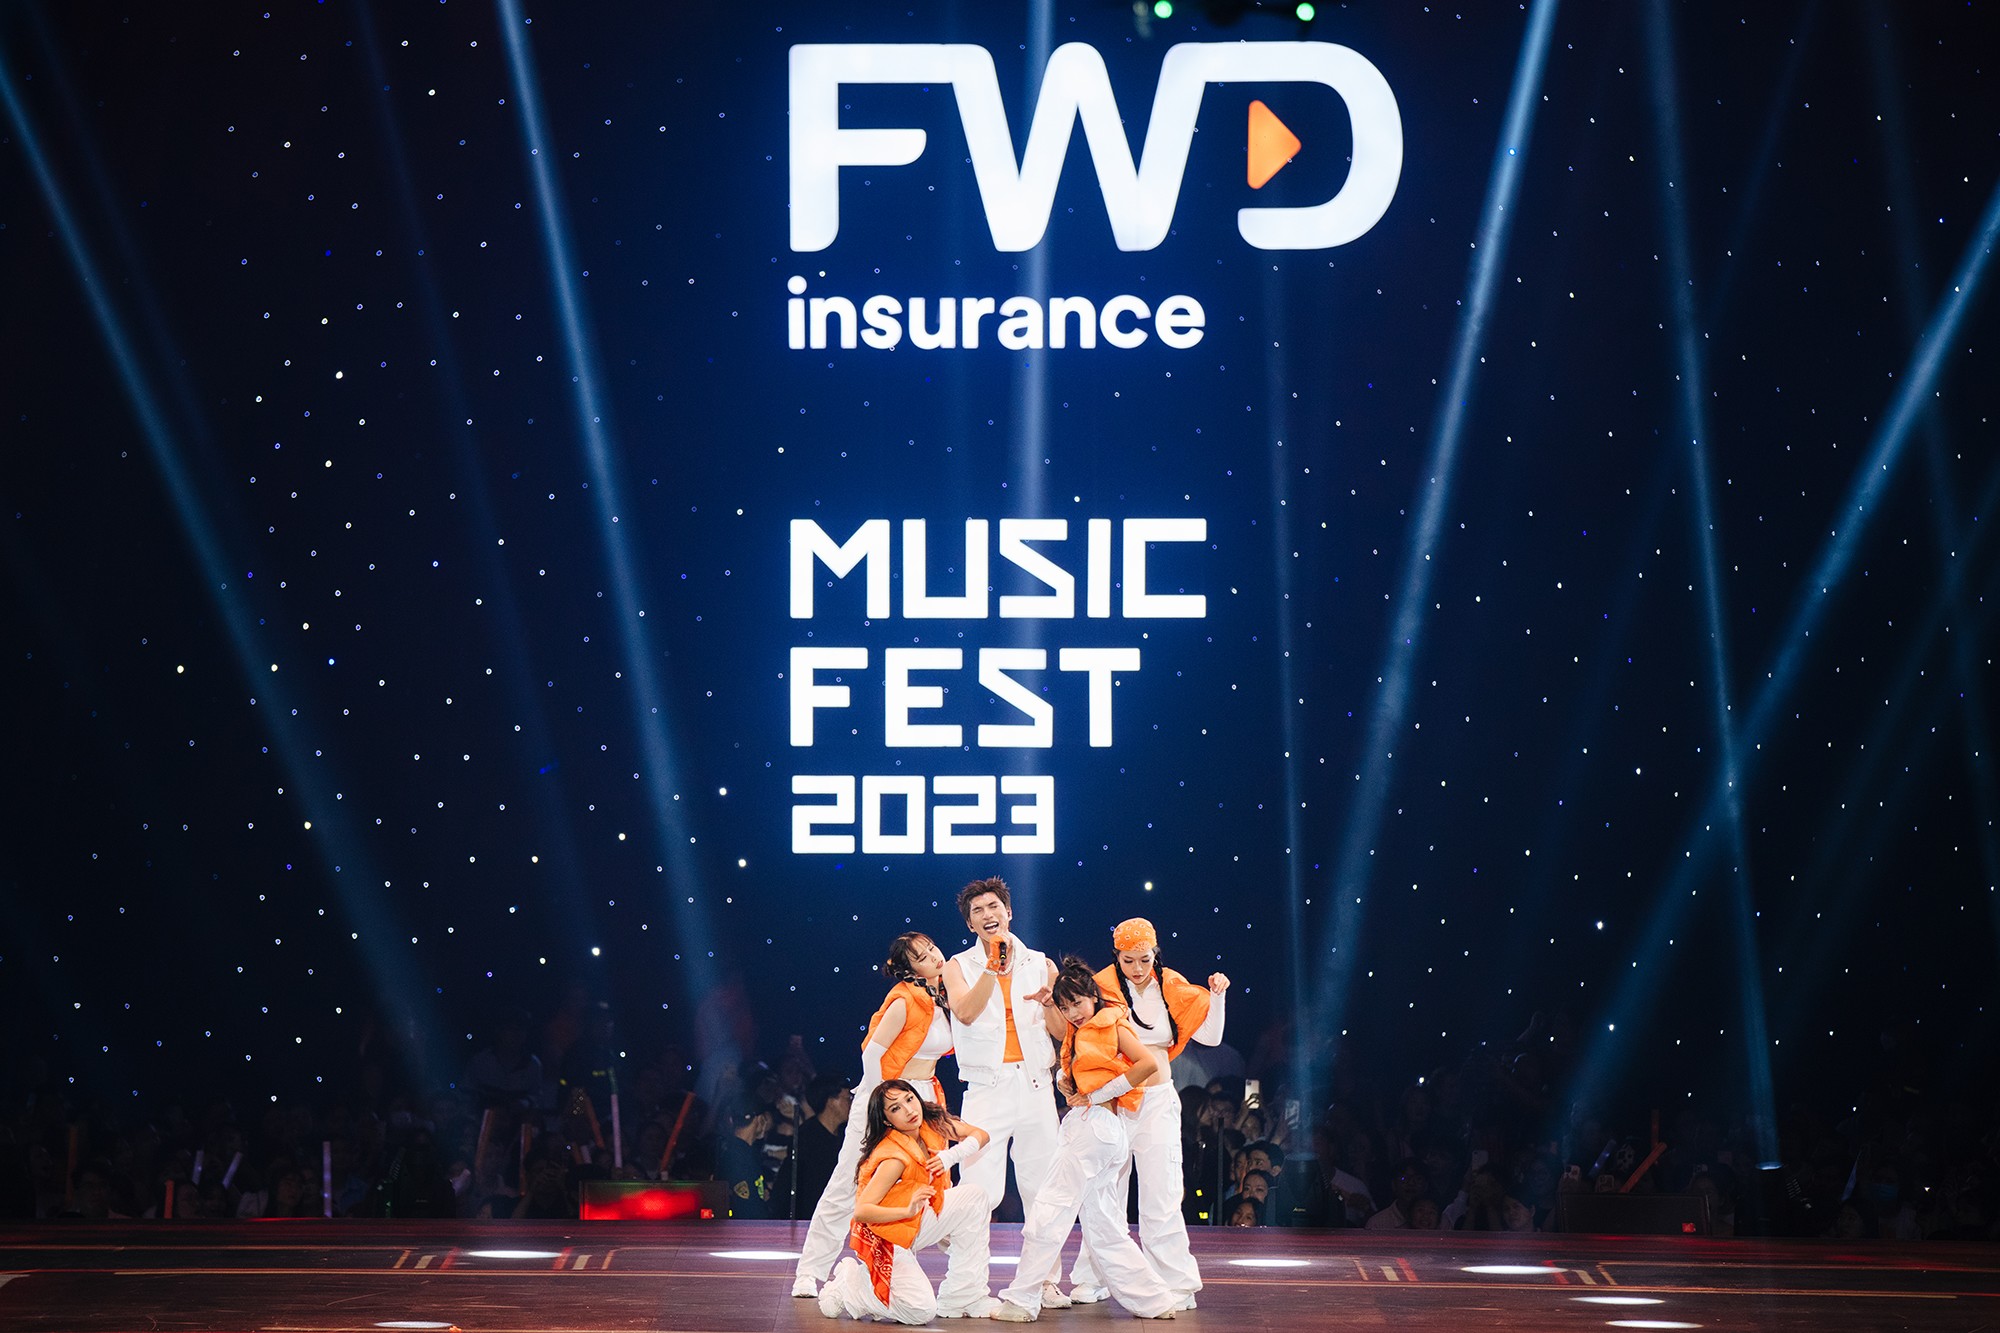 Choáng ngợp với quy mô sân khấu hoành tráng cùng dàn sao hạng A cực "chiến" của FWD Music Fest 2023 - 5